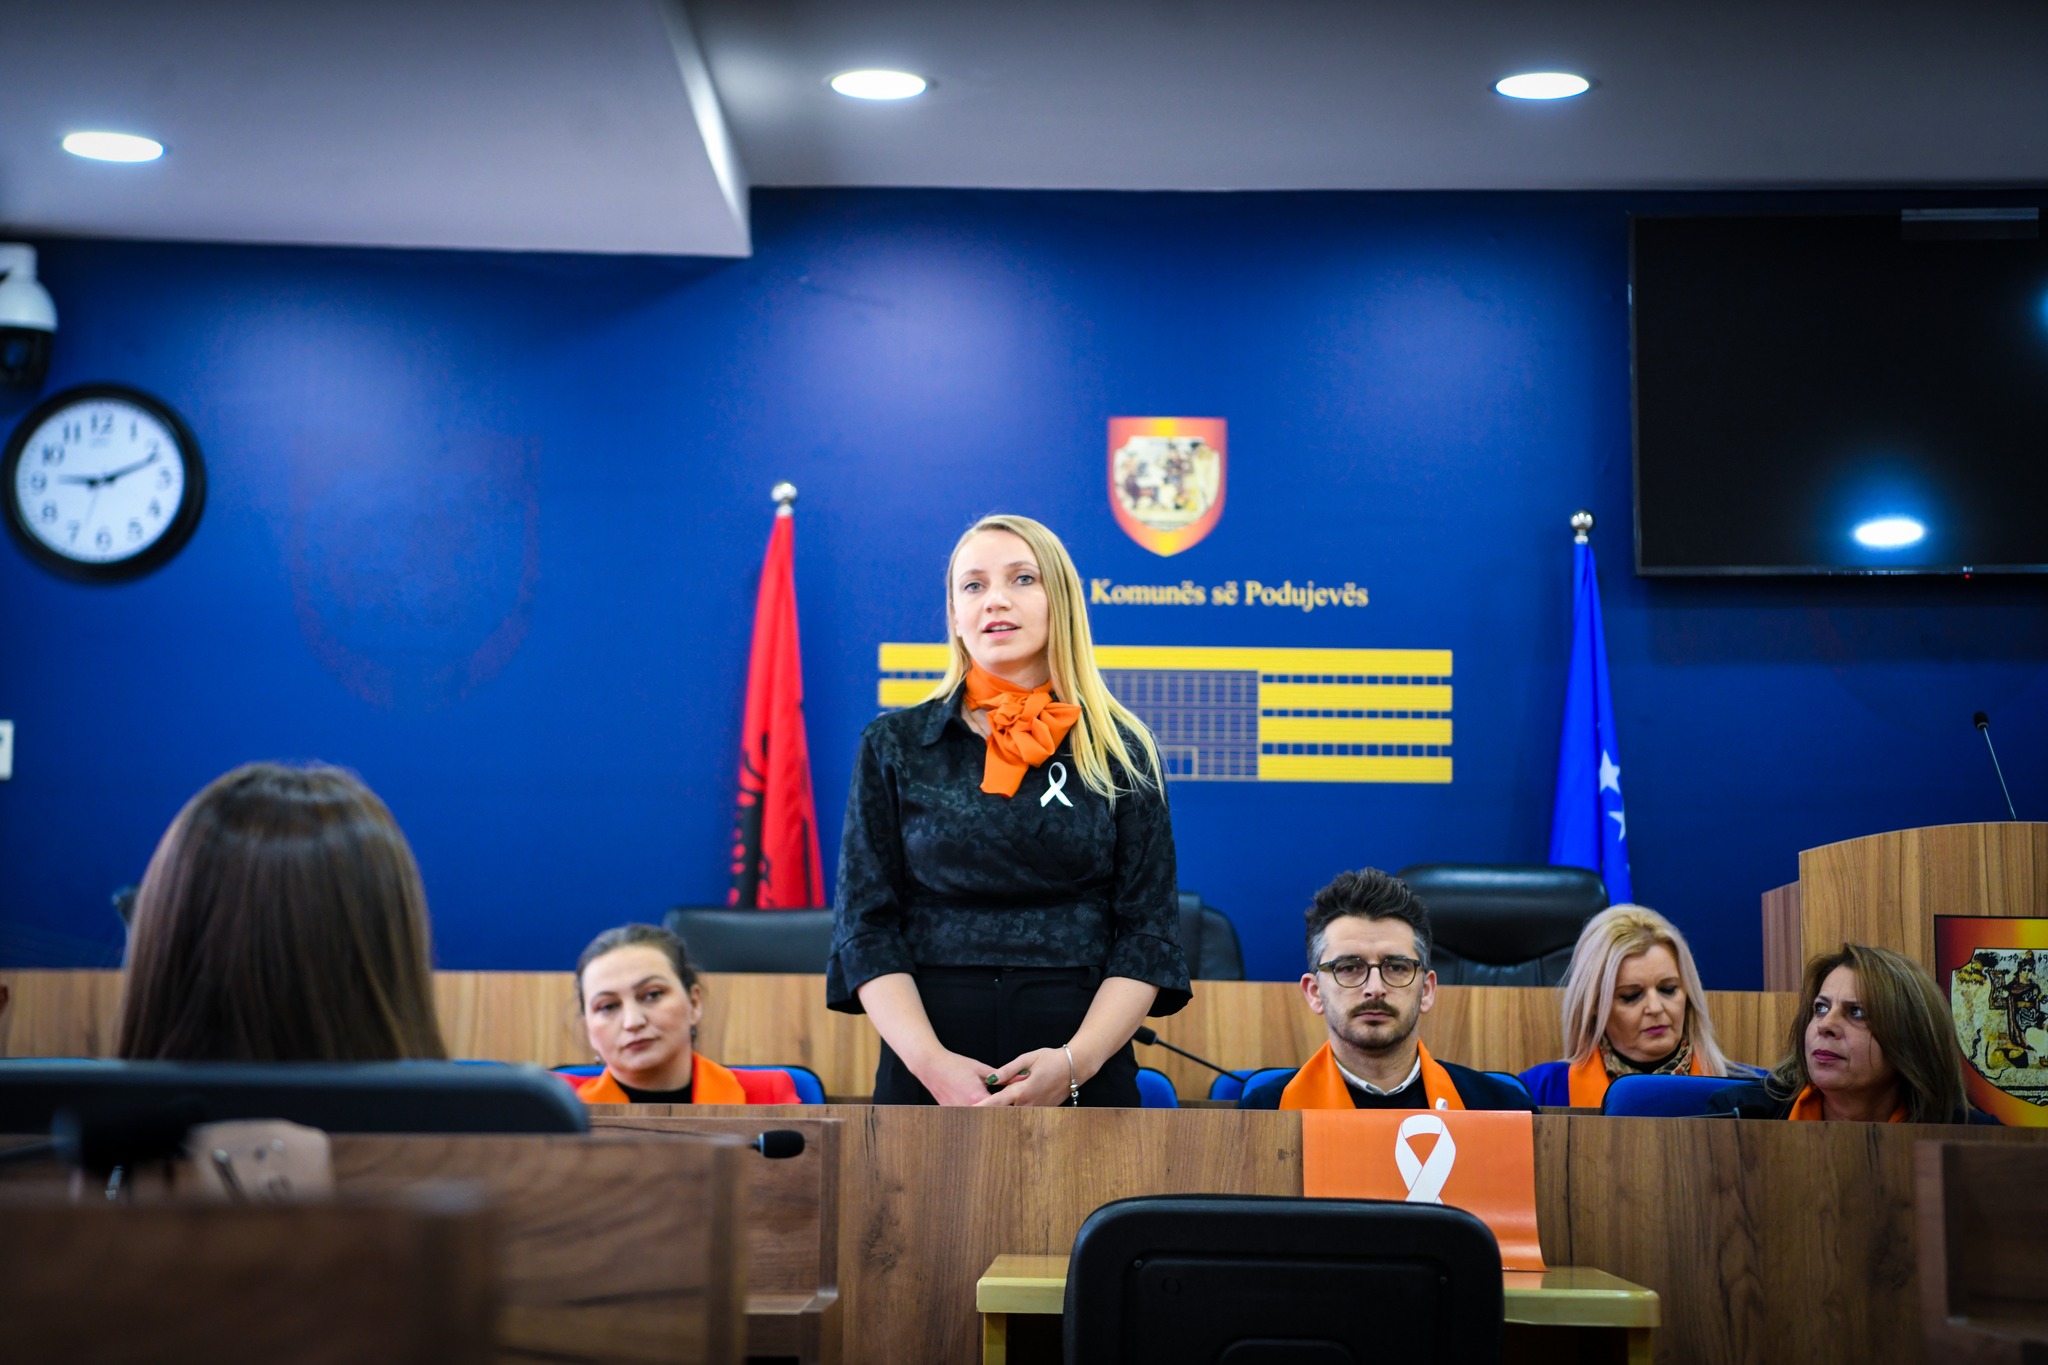  Komuna e Podujevës mbajti takim në kuadër të fushatës “16 Ditë Aktivizëm Kundër Dhunës ndaj Gruas”